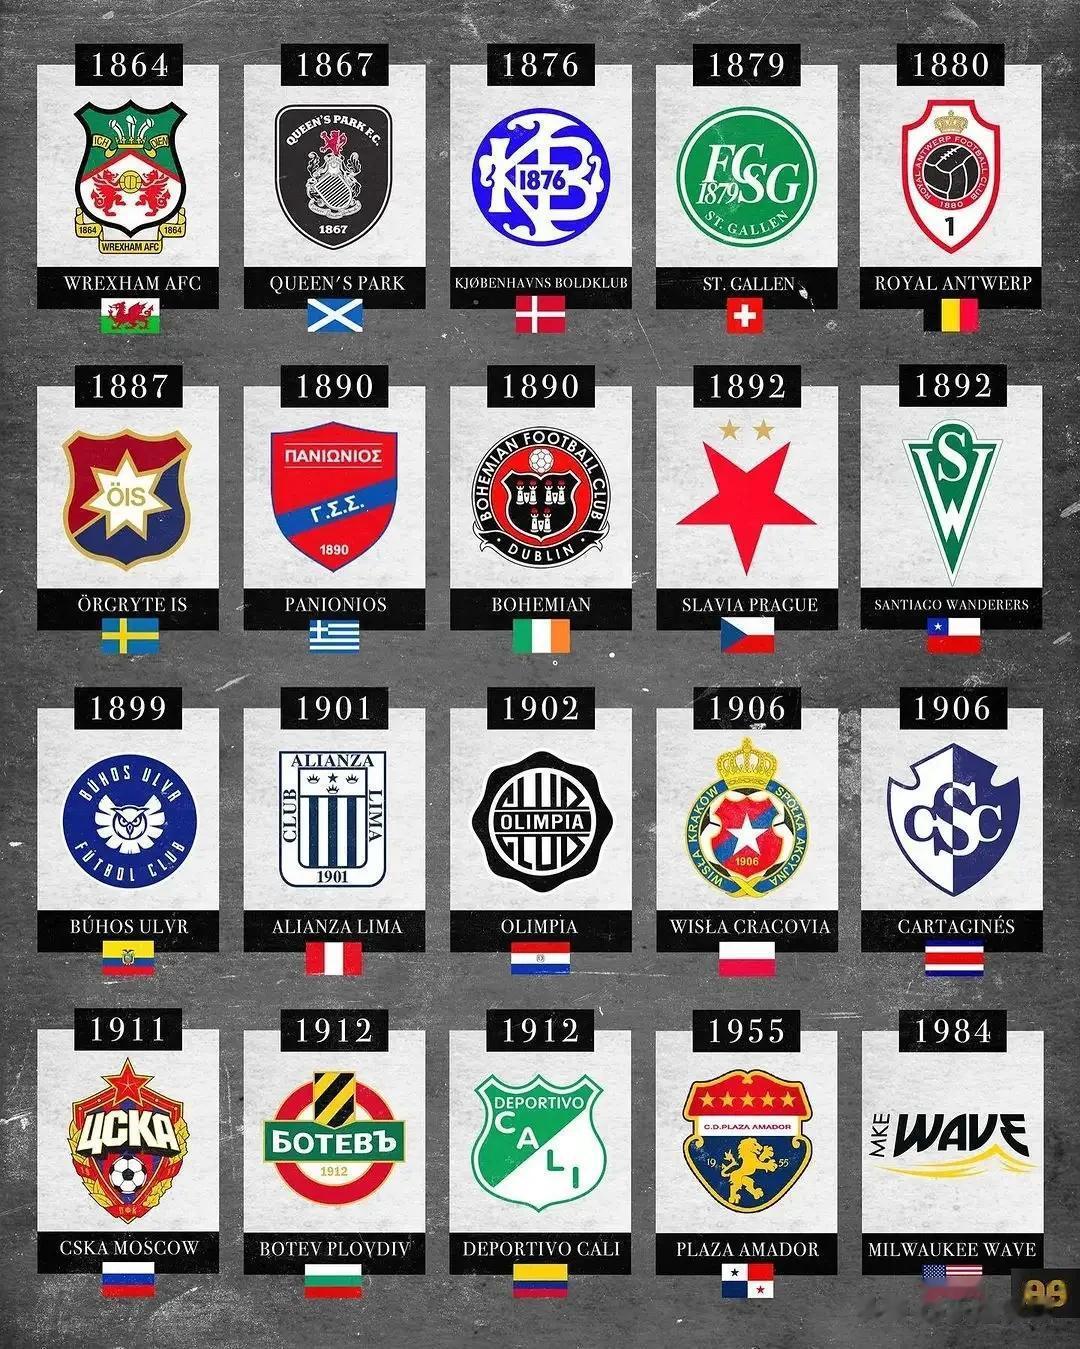 足坛历史上成立历史最早的俱乐部，豪门球队中波尔图成立于1893年，尤文图斯成立于(4)